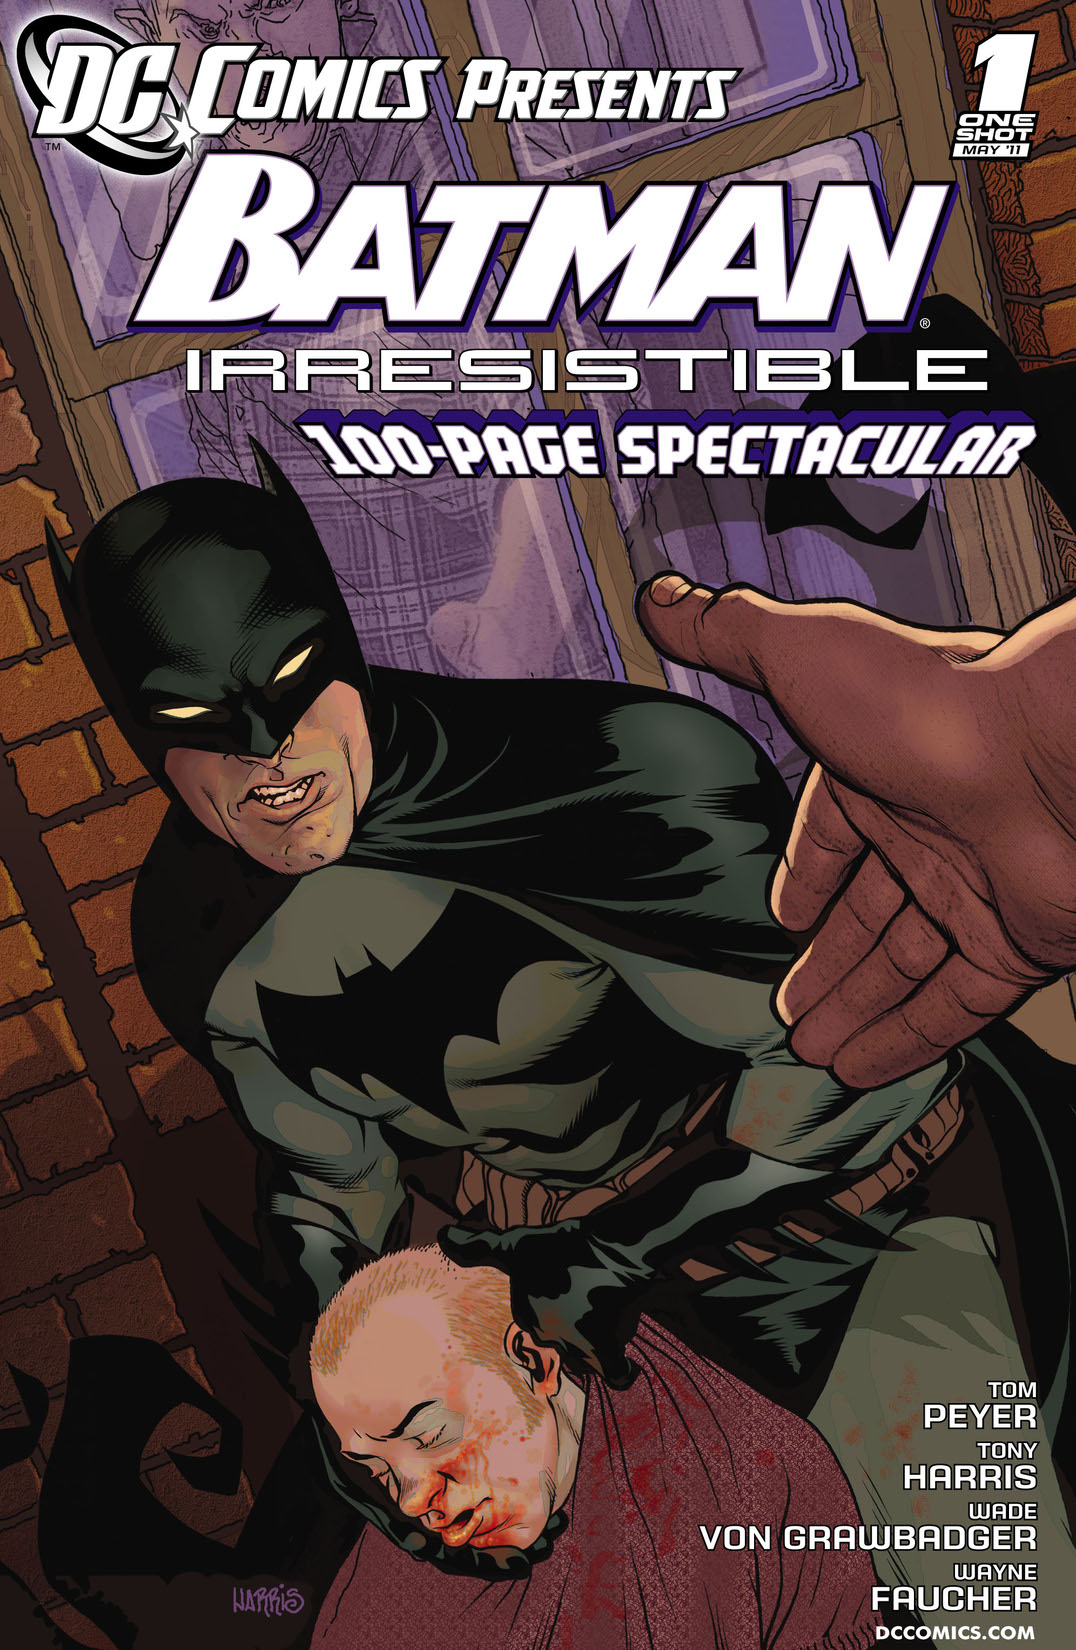 DC Comics Presents: Batman - Irresistible (2011-) #1 preview images